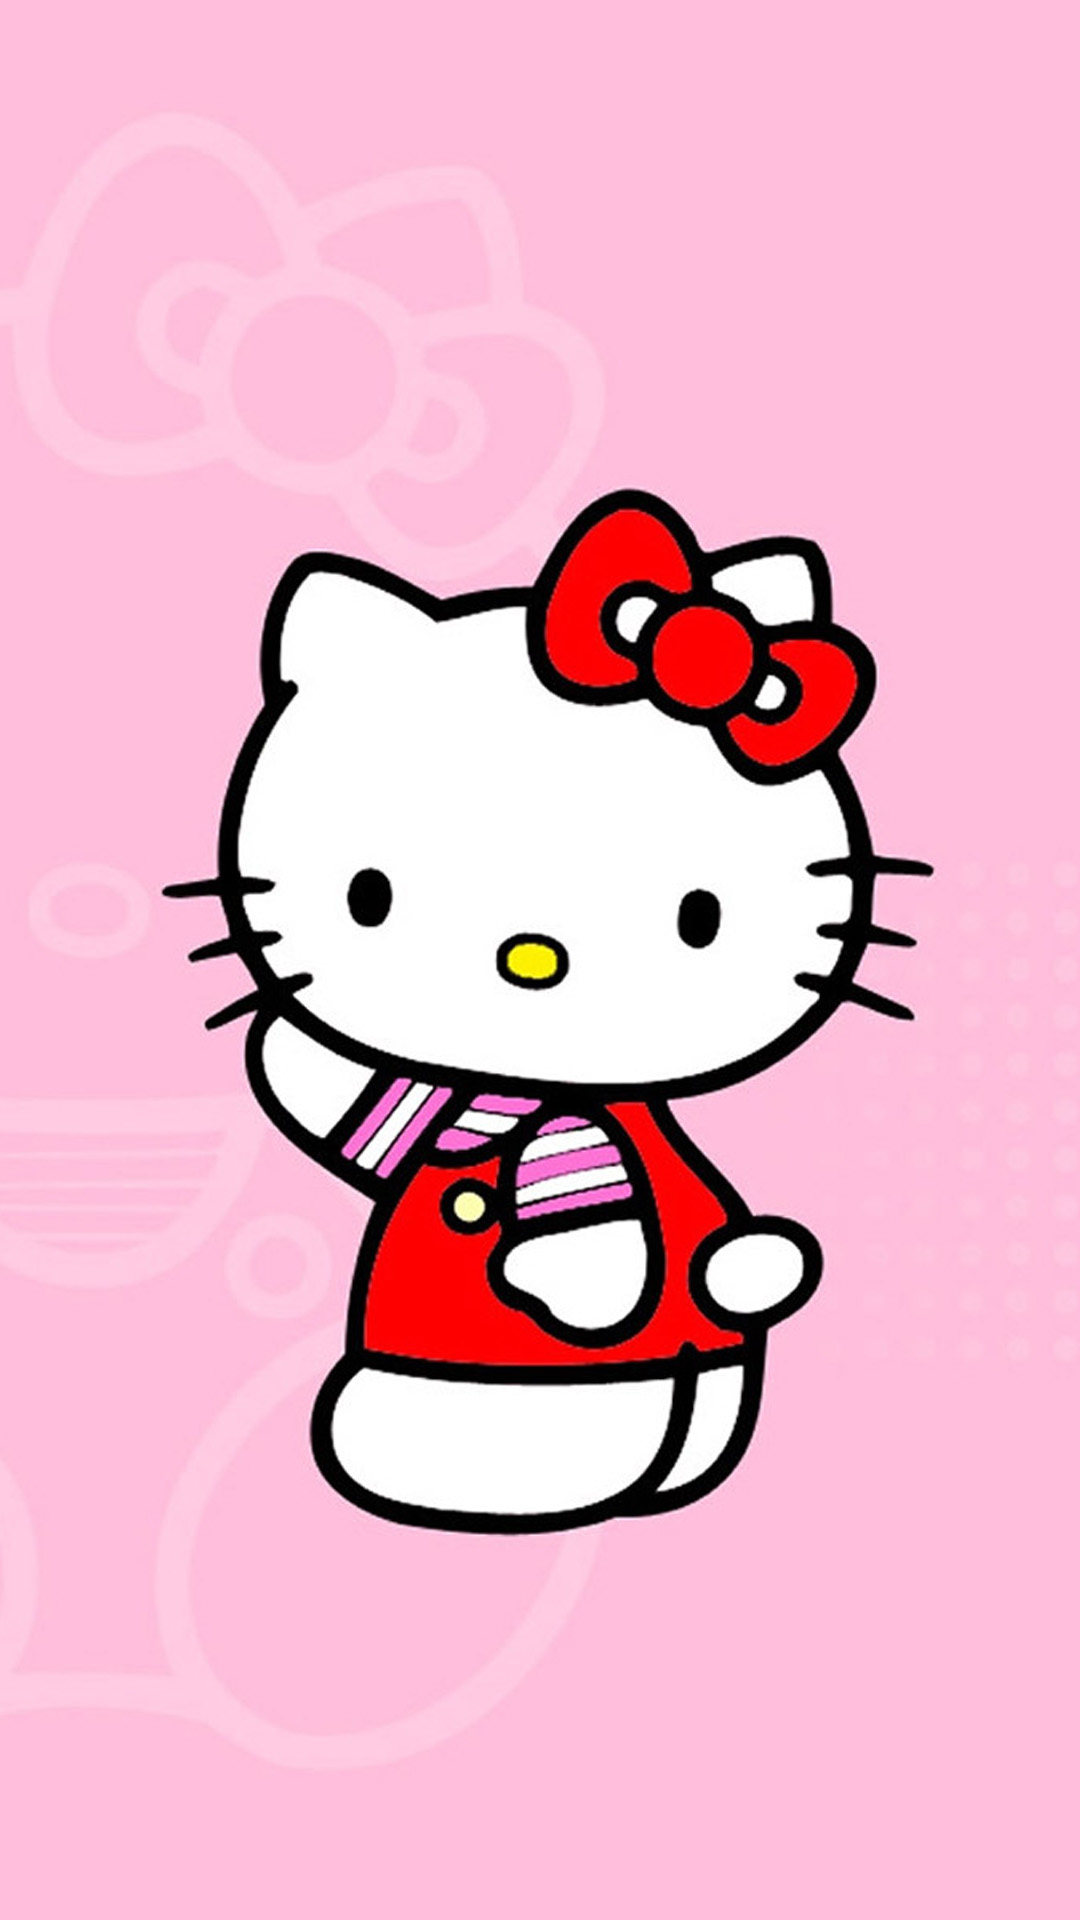 Những hình nền Hello Kitty đáng yêu chắc chắn sẽ làm bạn cười tươi và cảm thấy vui vẻ. Hãy xem qua những tấm hình này để đón nhận cảm giác ấm áp và đáng yêu như tờ giấy ghi chú của Hello Kitty.